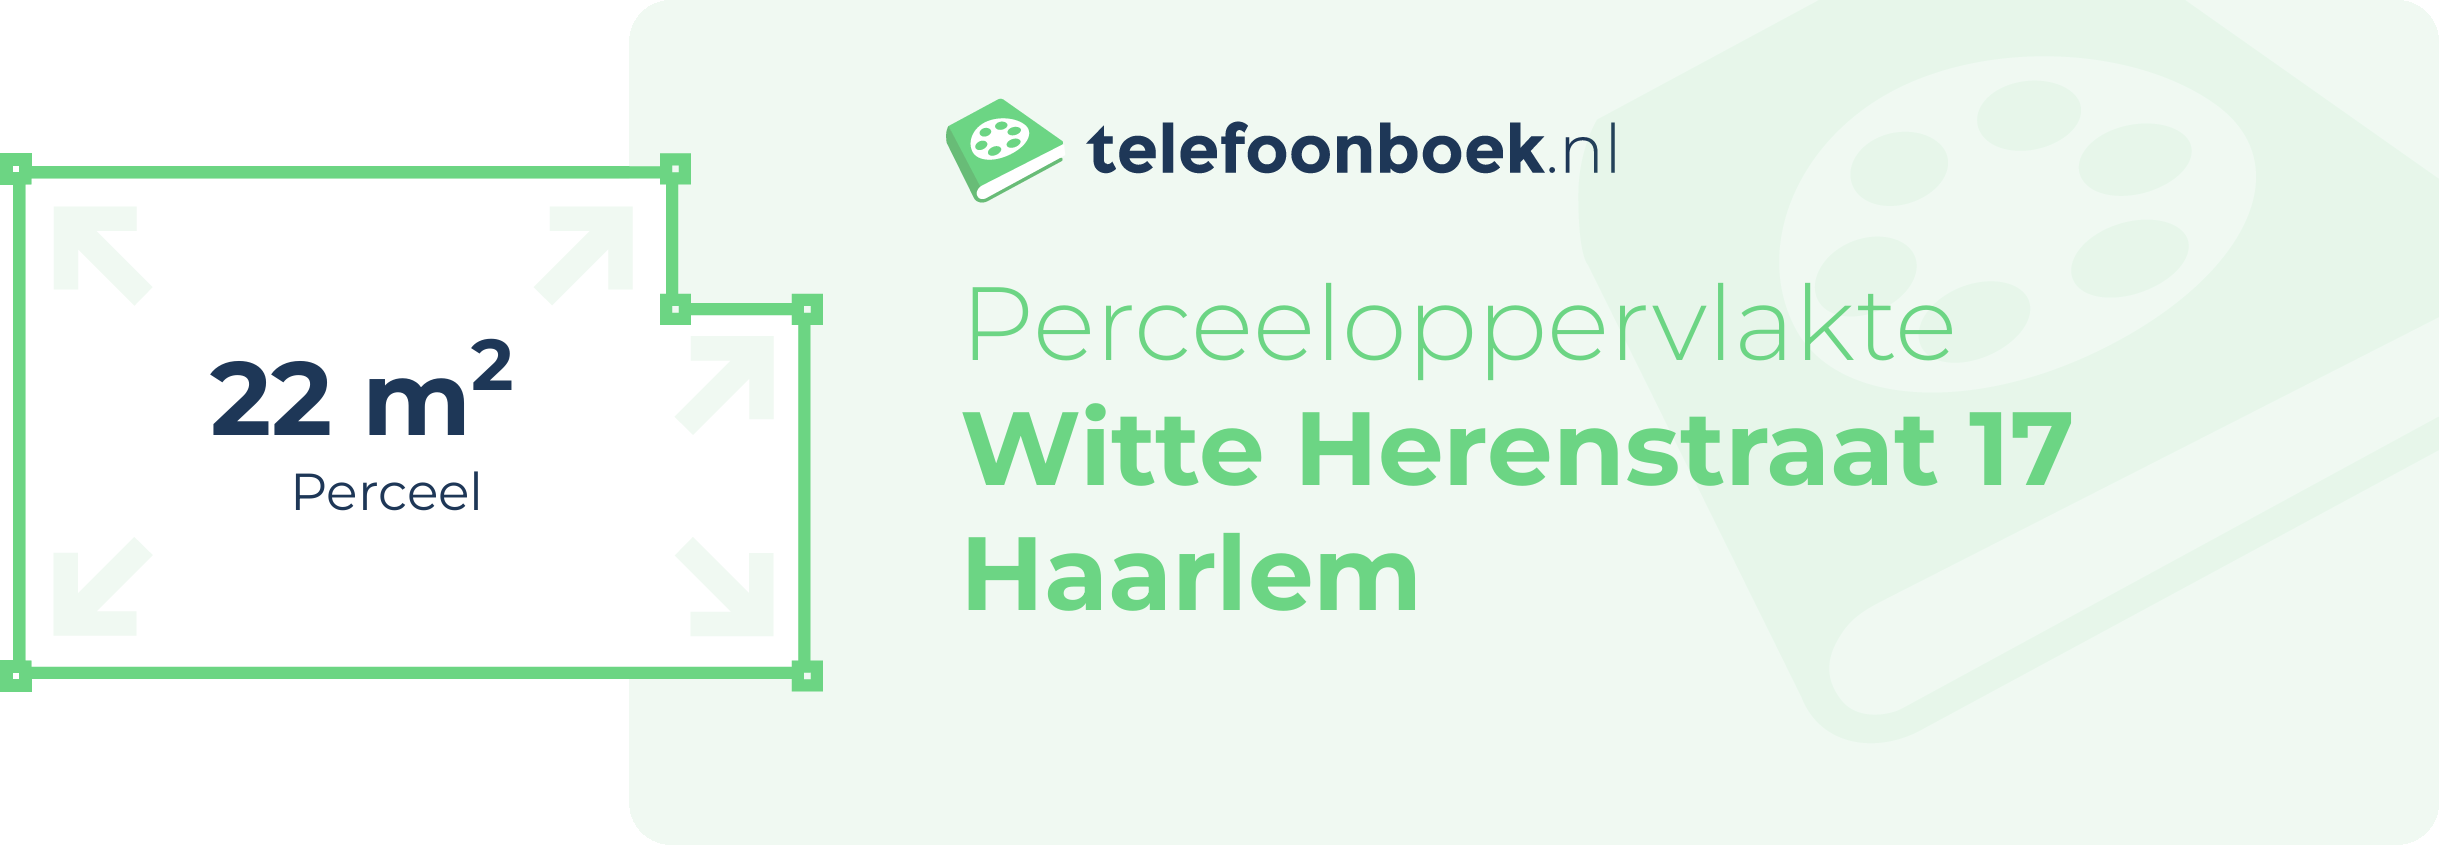 Perceeloppervlakte Witte Herenstraat 17 Haarlem